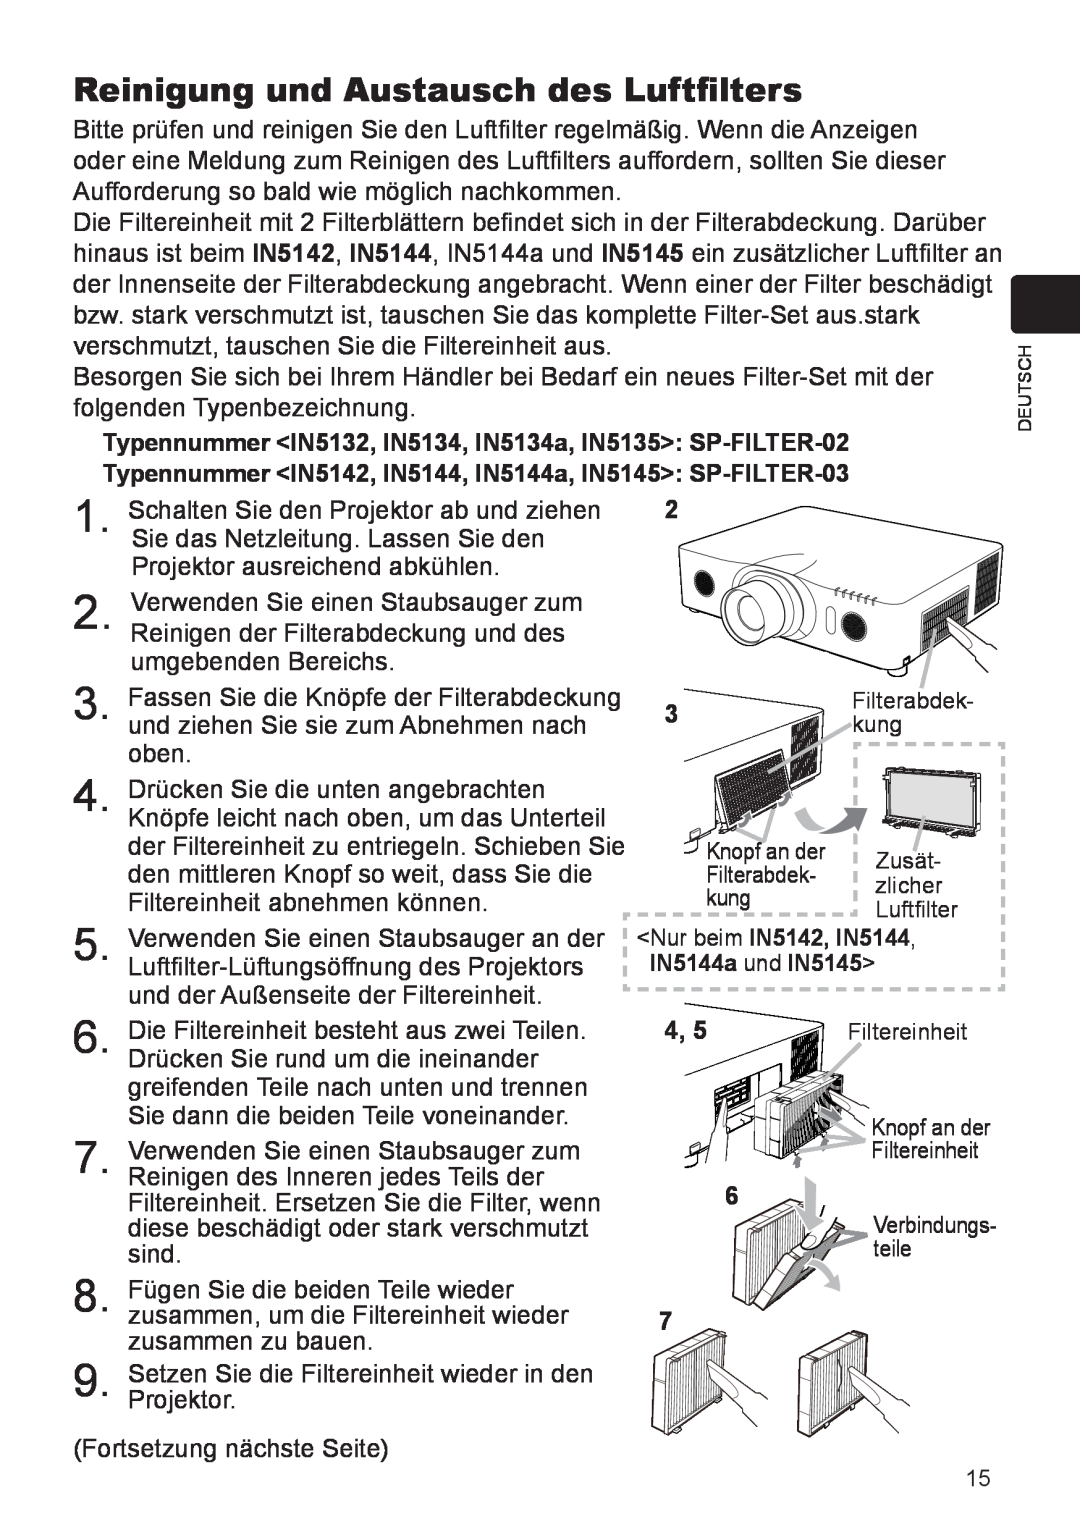 InFocus user manual Reinigung und Austausch des Luftfilters, Typennummer IN5132, IN5134, IN5134a, IN5135 SP-FILTER-02 